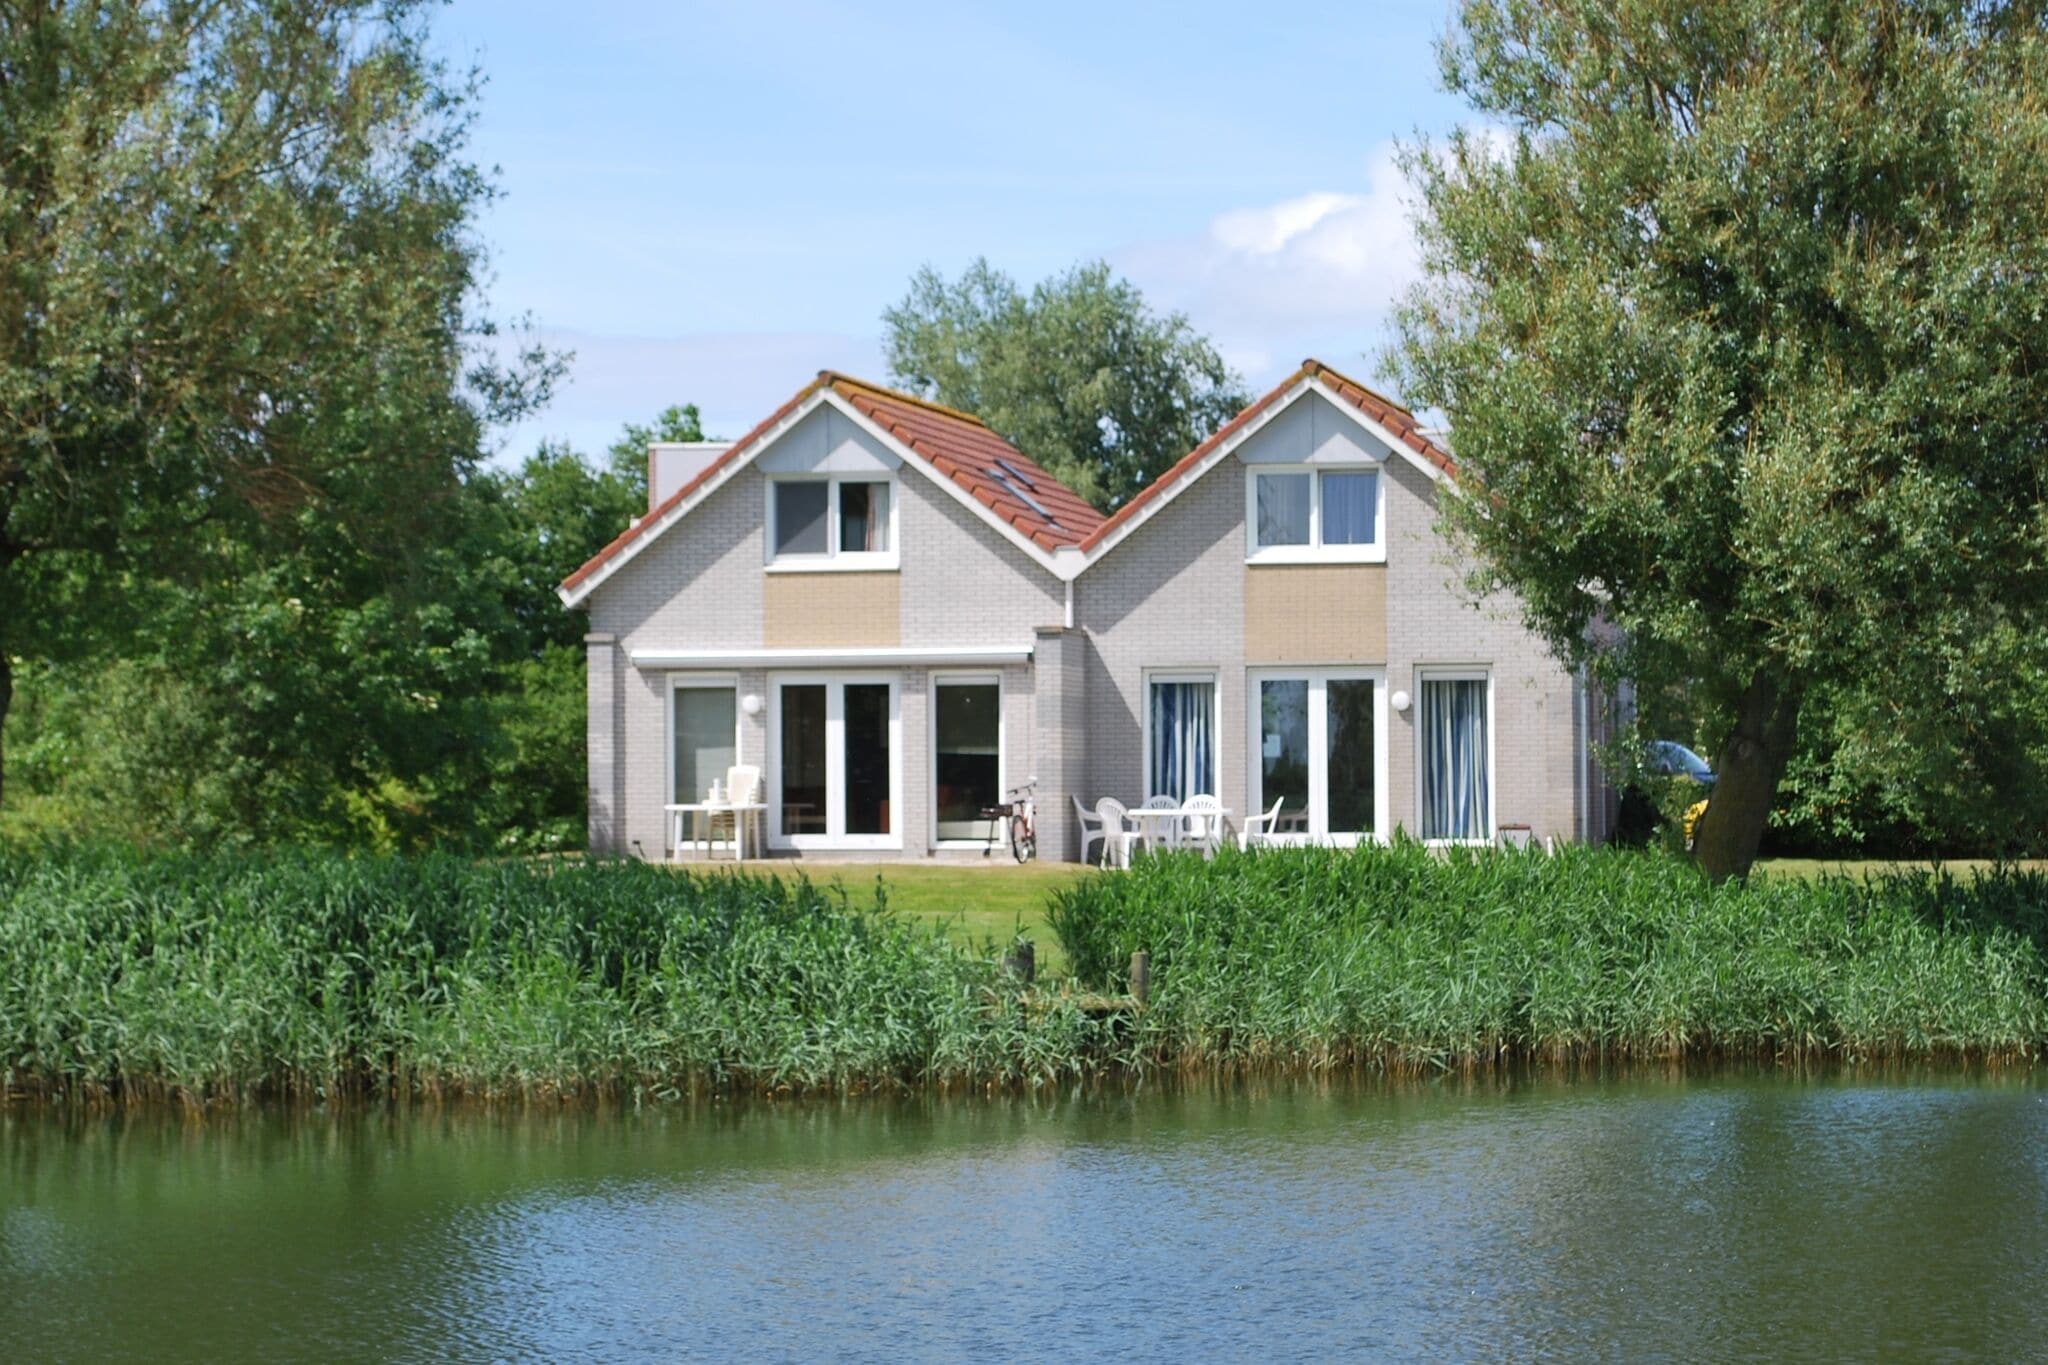 Mooi vakantiehuis aan het water in Friesland